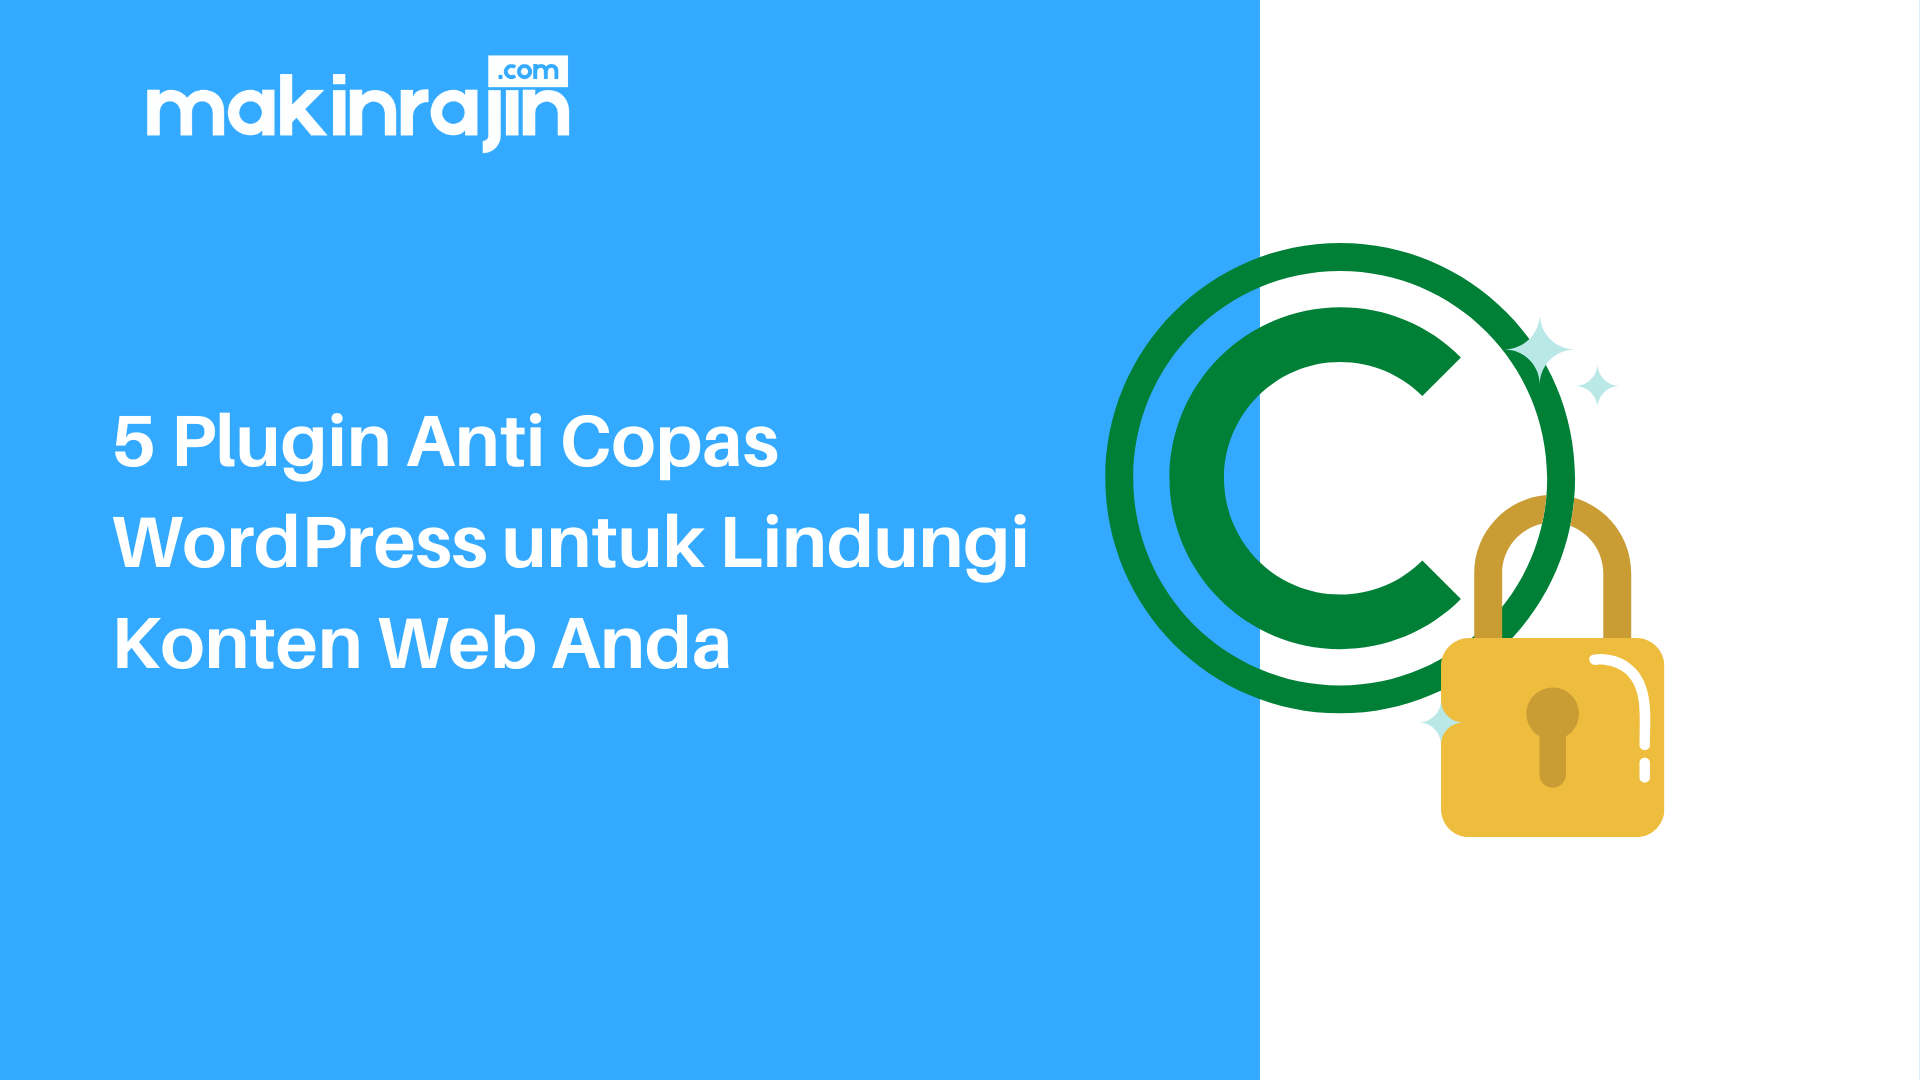 5 Plugin Anti Copas WordPress untuk Lindungi Konten Web Anda